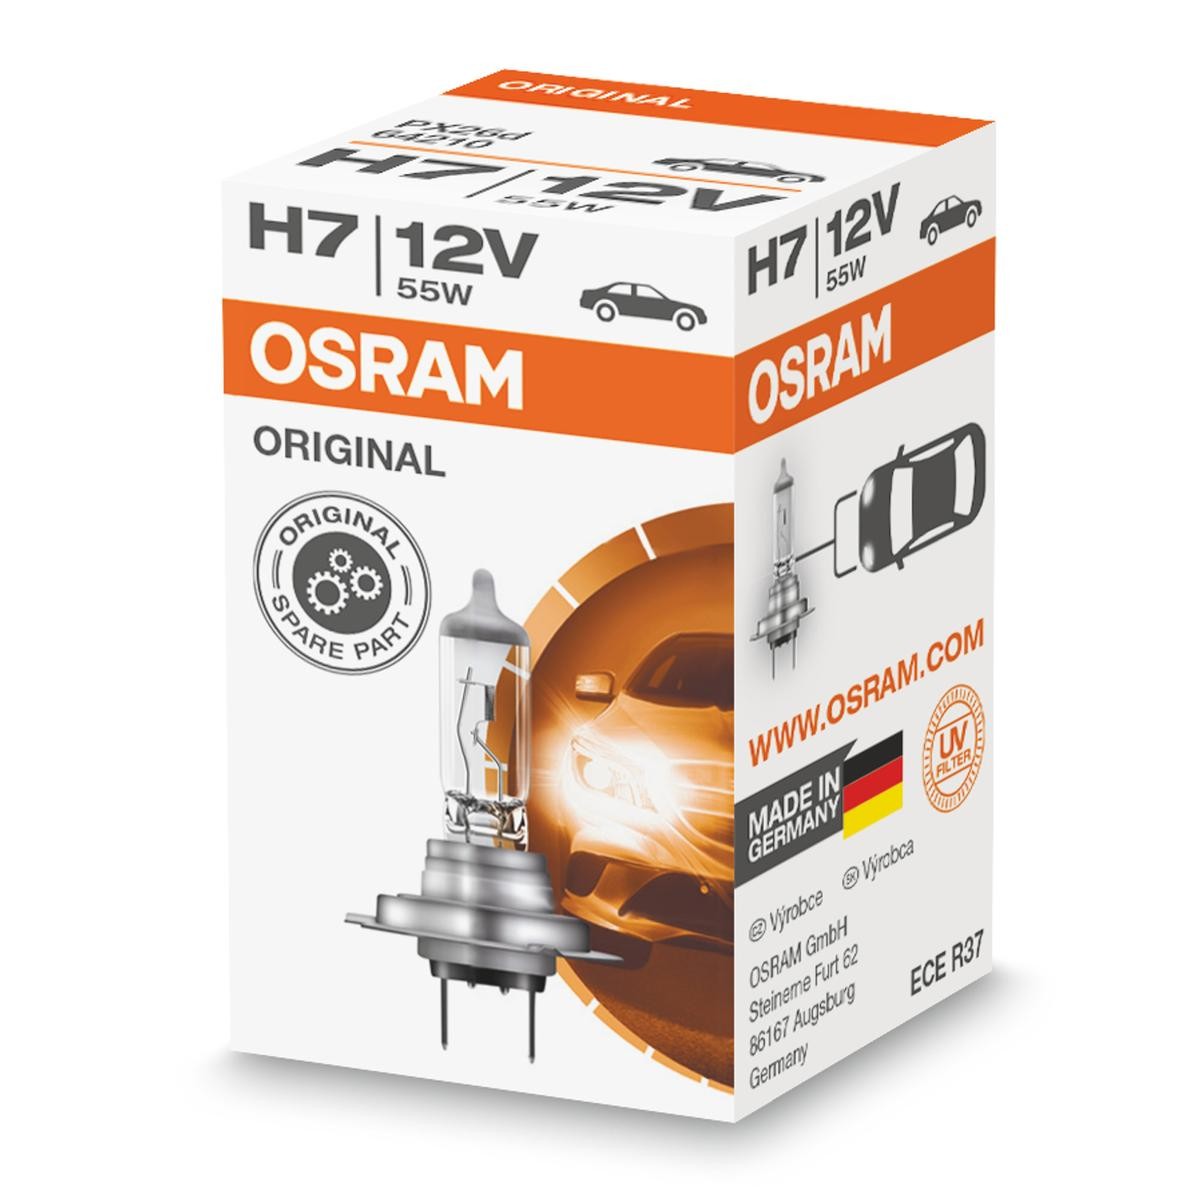 Honda ricambi di qualità originale 
H7 OSRAM 64210L